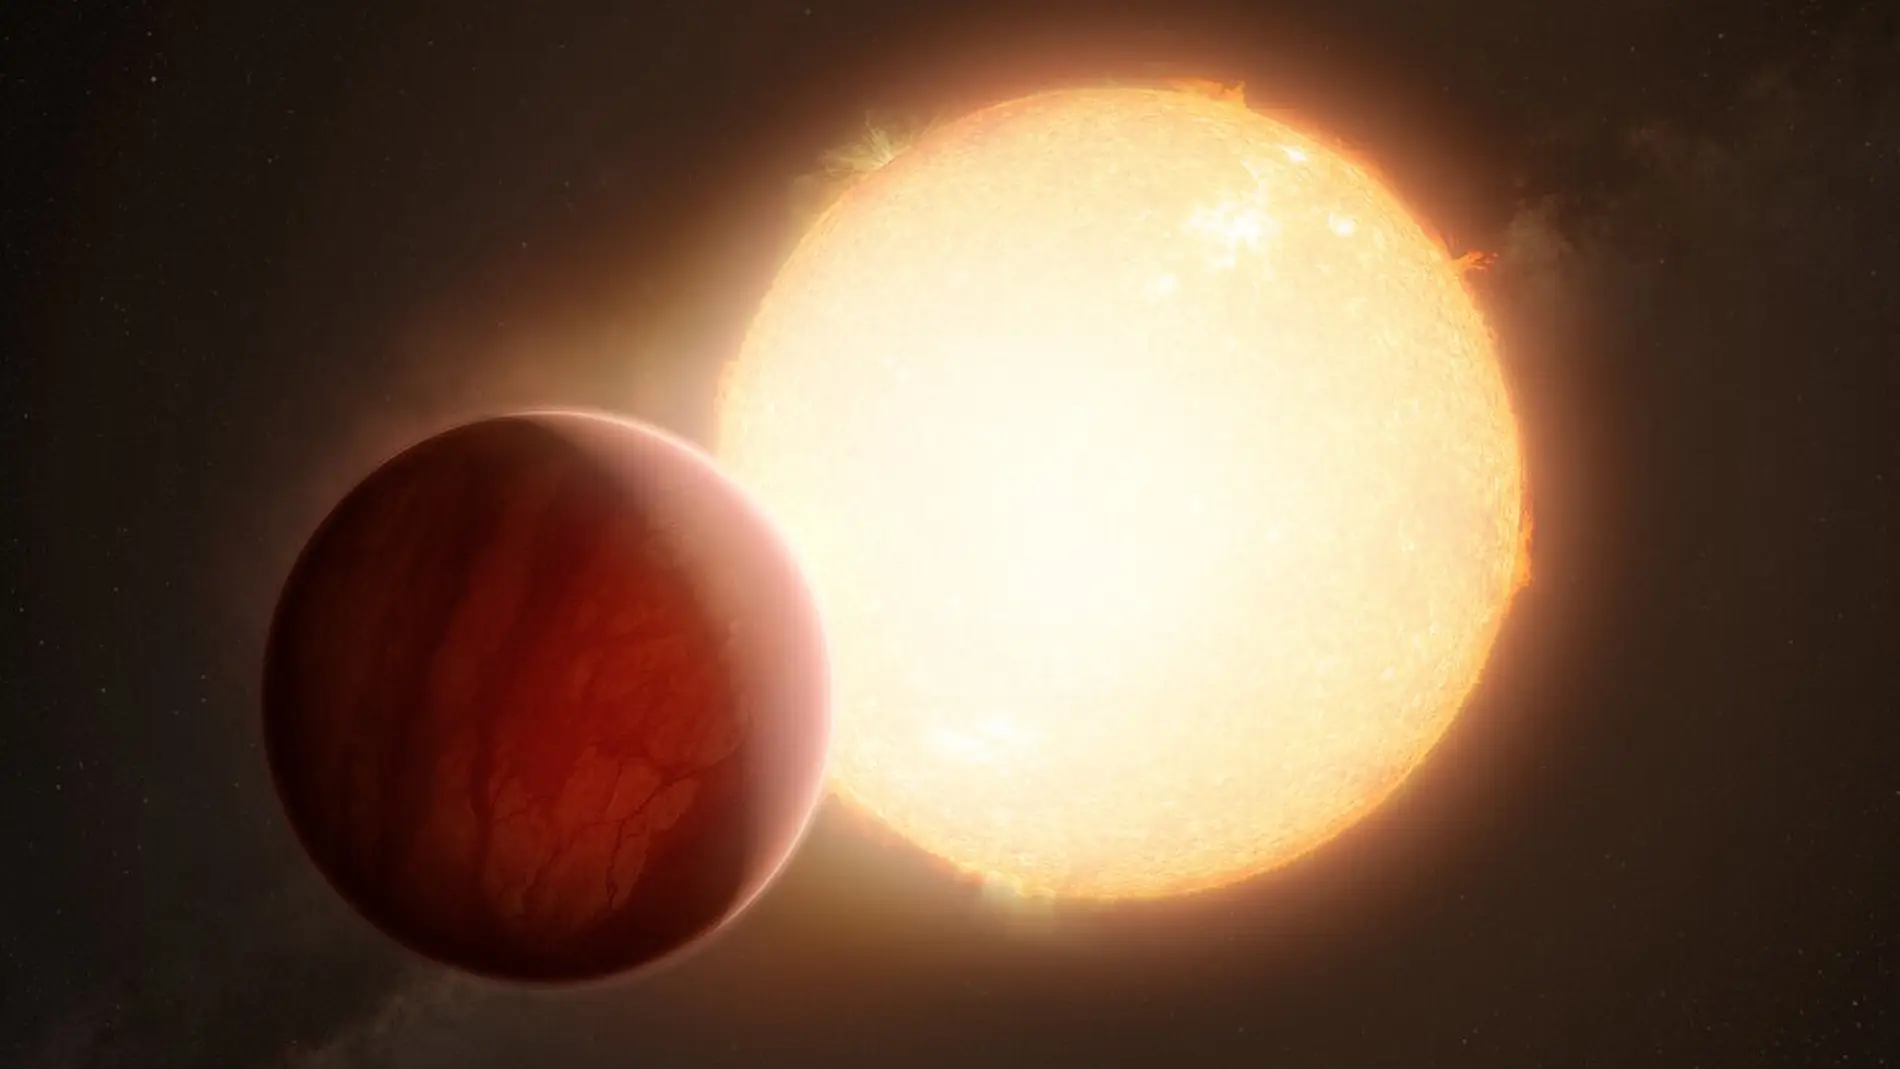 Representación artística de un exoplaneta ultracaliente